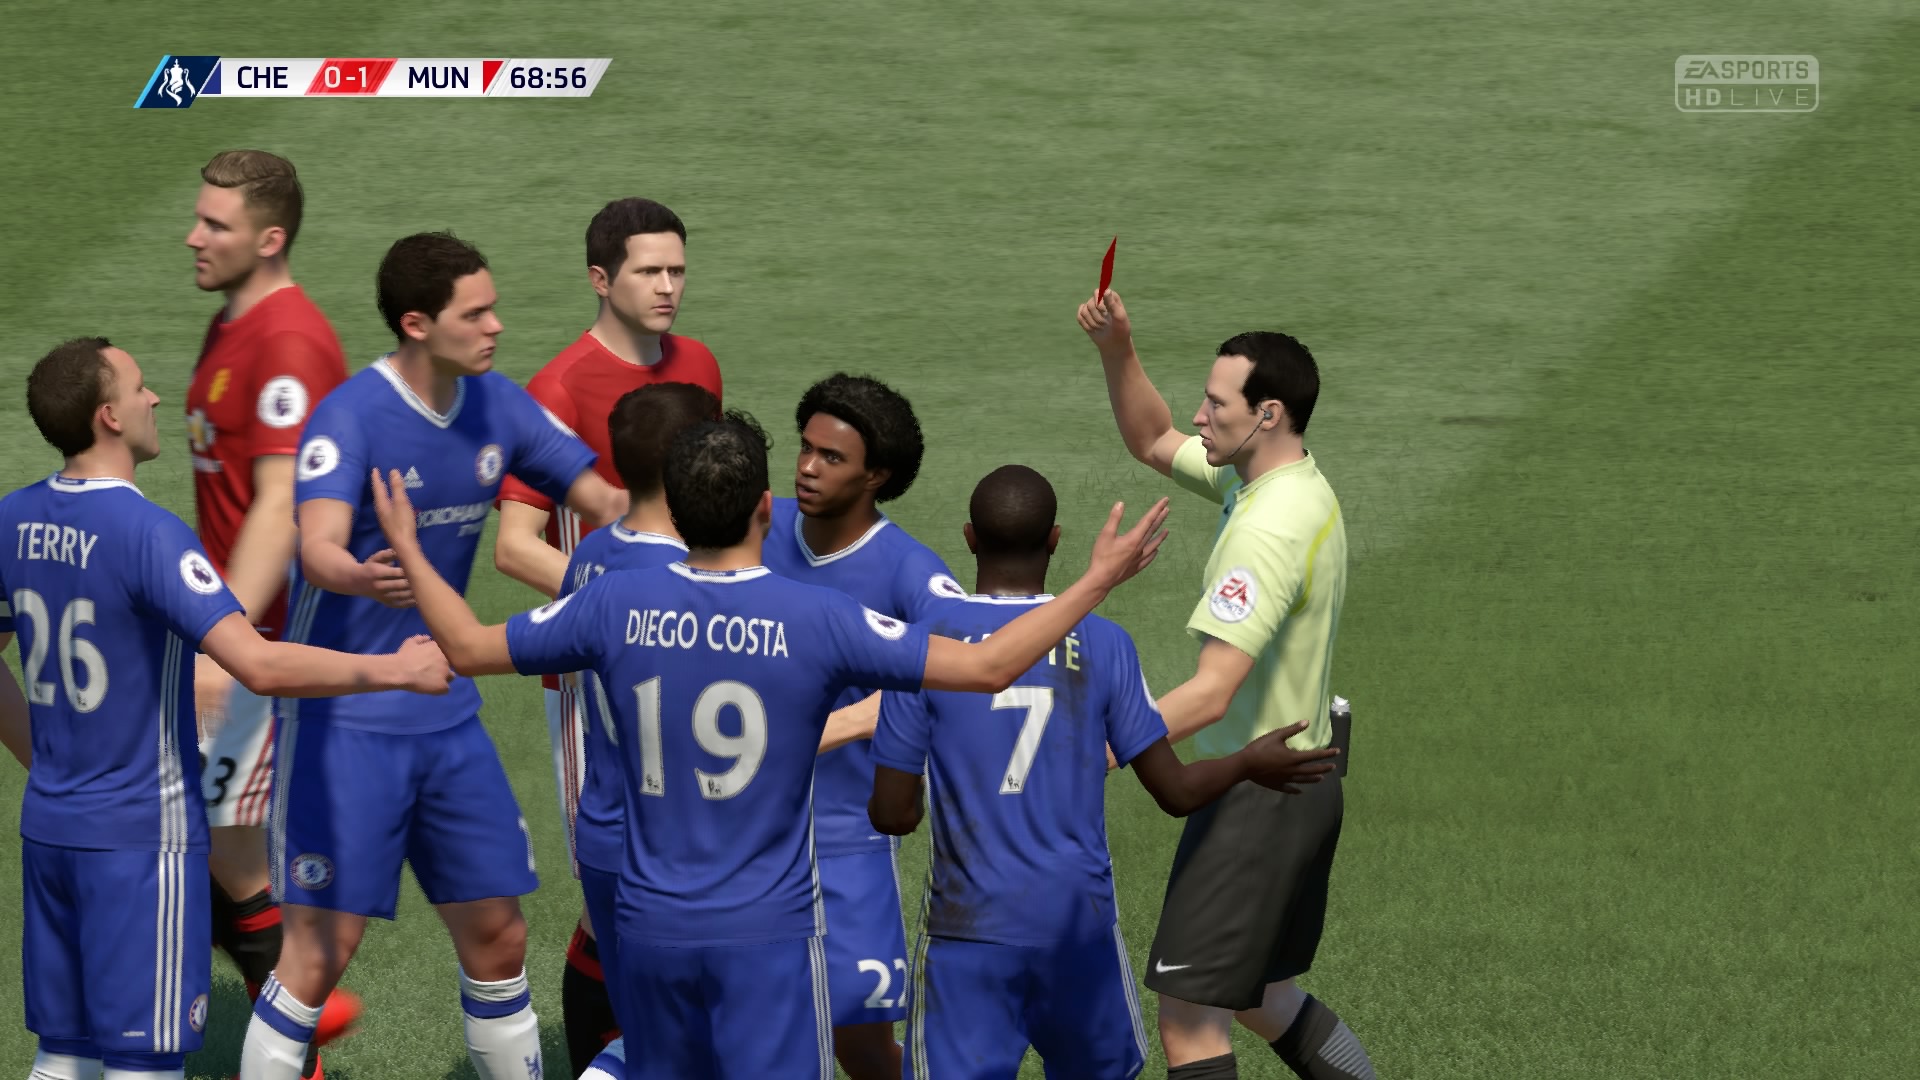 FIFA 17 Intros 0-1 CHE V MUN, 2nd Half